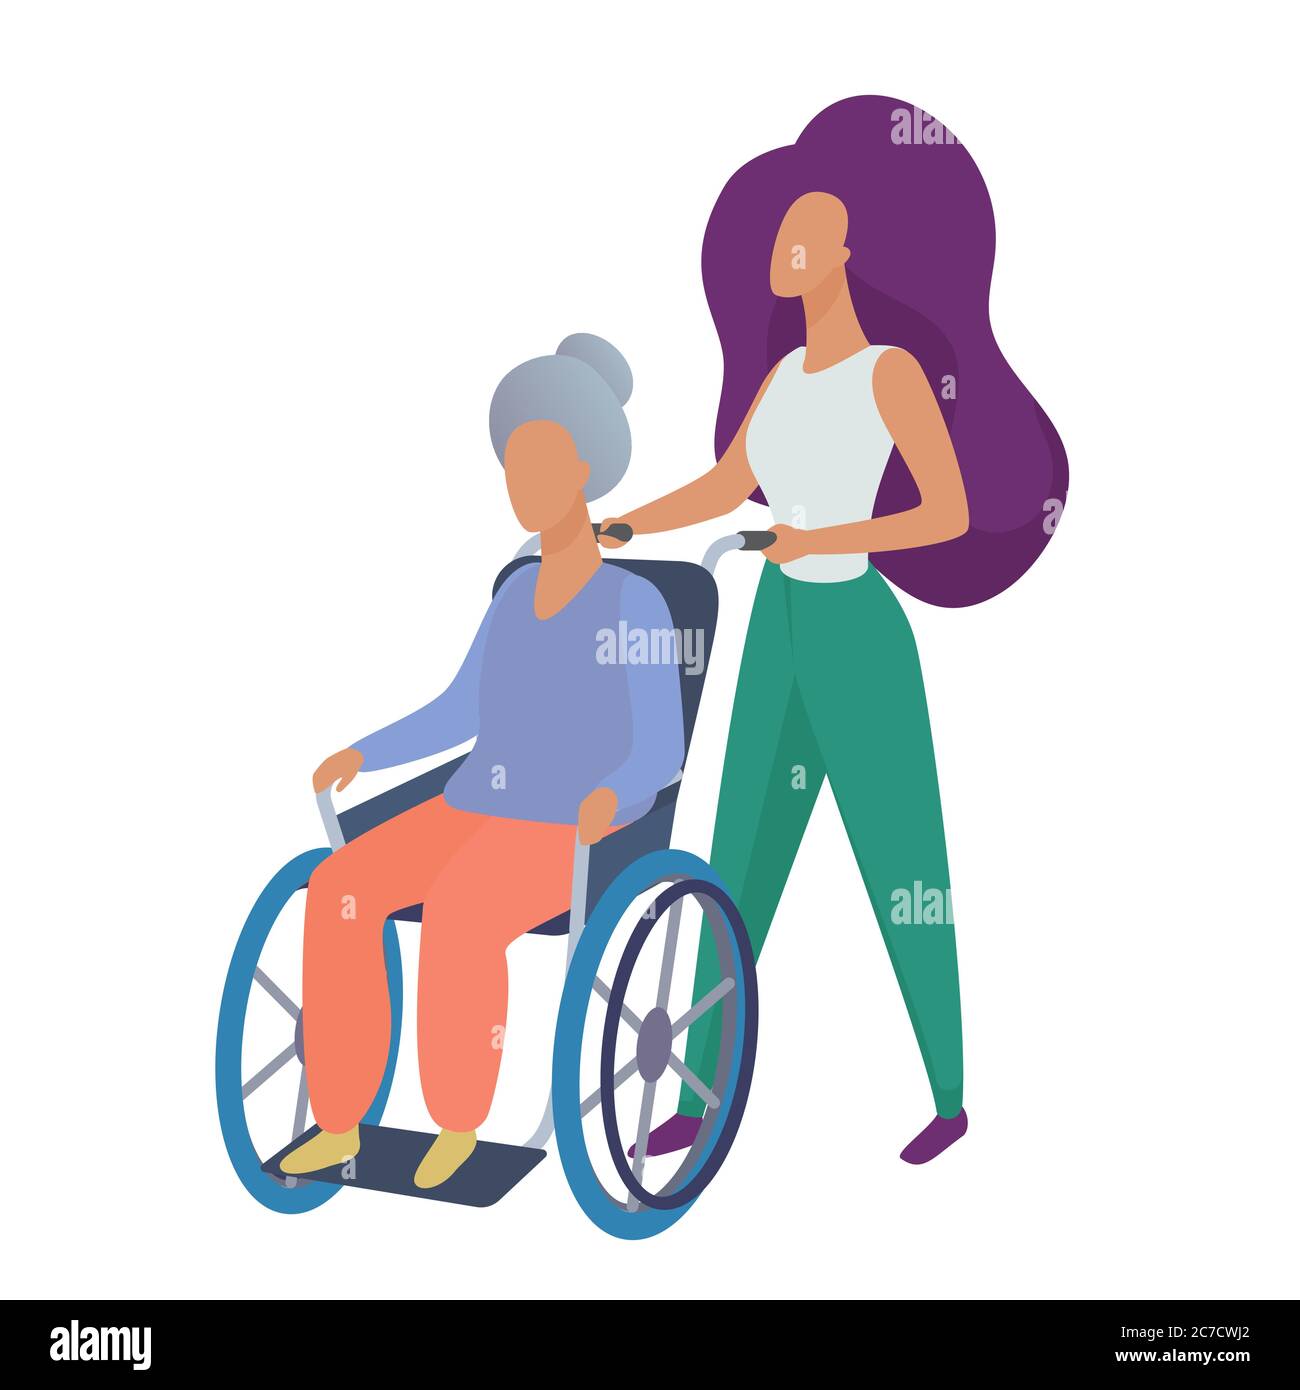 Jeune femme travailleur social bénévole s'occupant de la vieille femme handicapée en fauteuil roulant illustration vectorielle Illustration de Vecteur